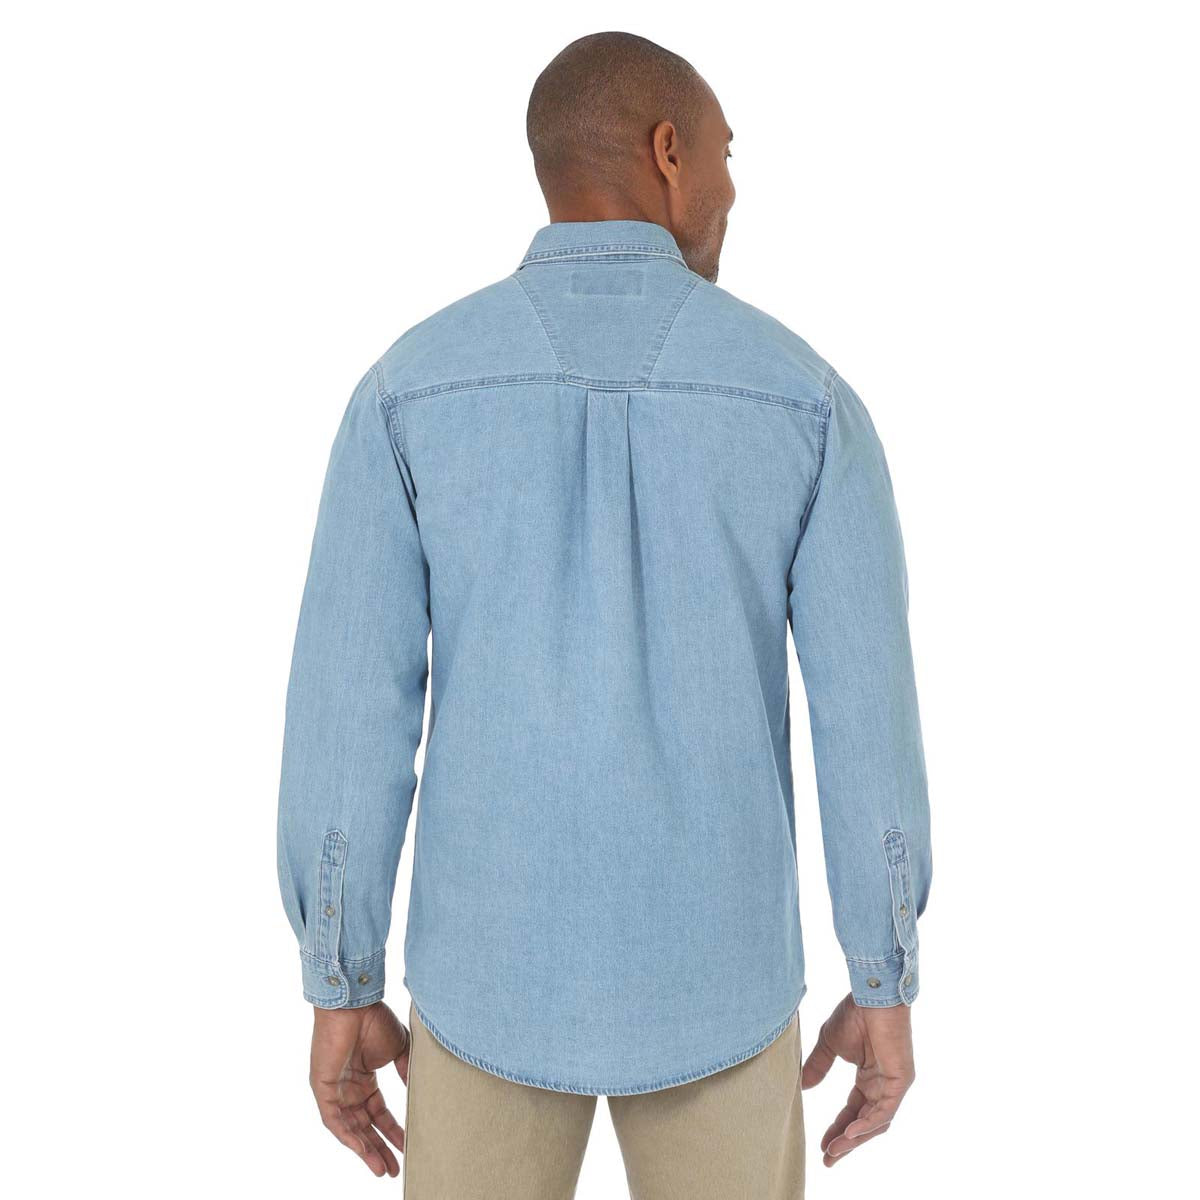 Wrangler Men's Short Sleeve Work Shirt - Ms370bw, Size: Medium, Blue